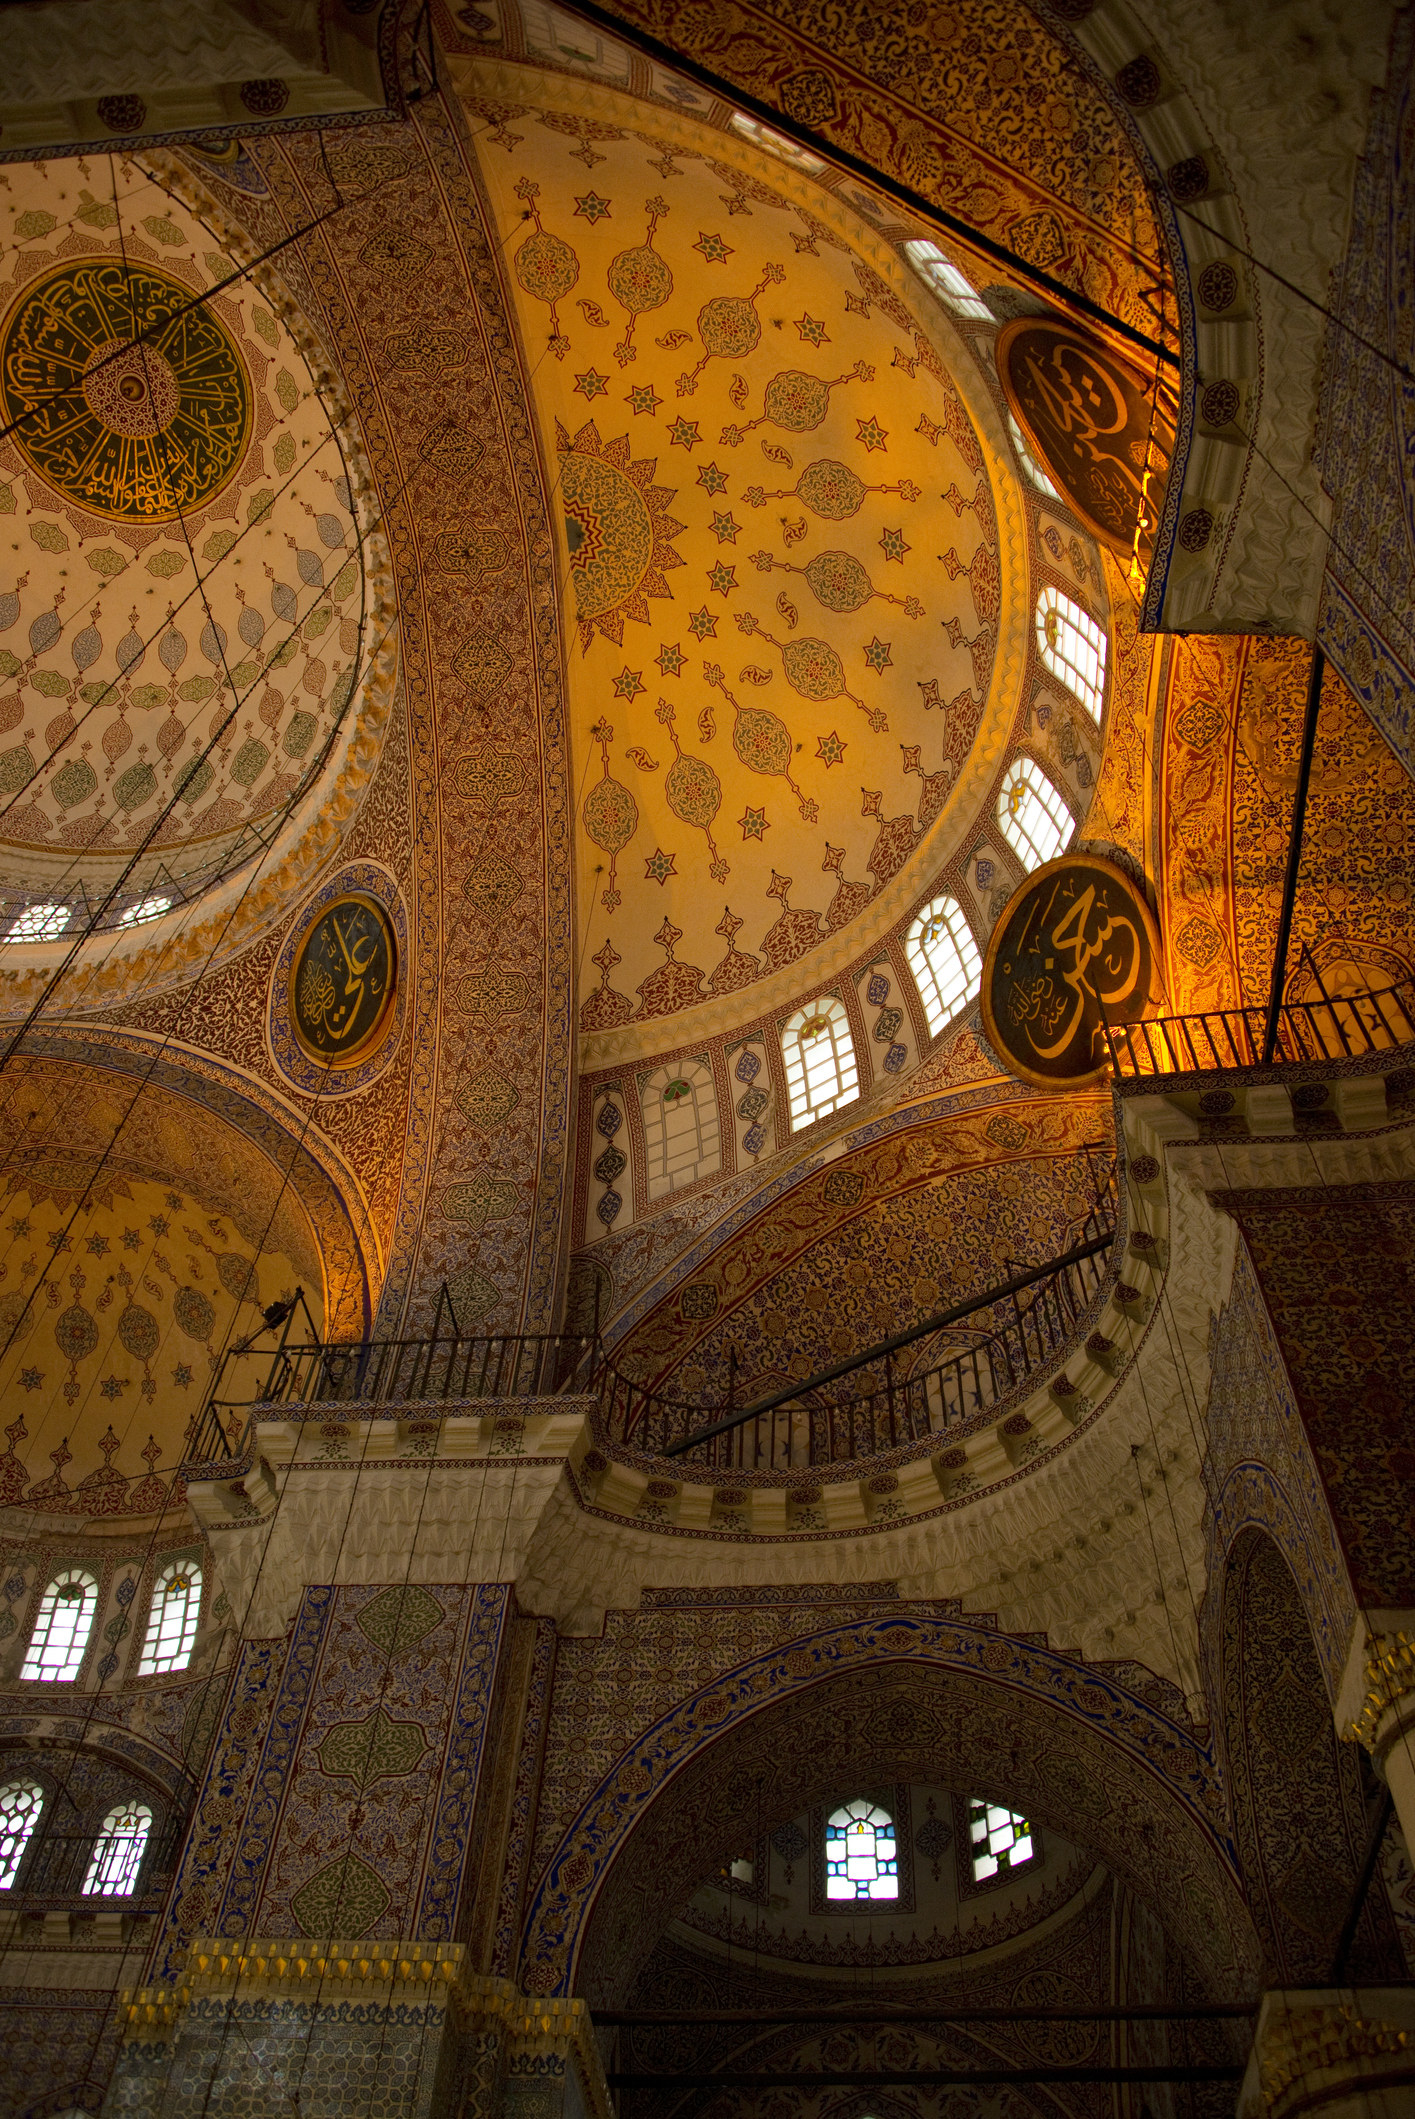 Ceiling details in the Hagia Sophia Mosque.